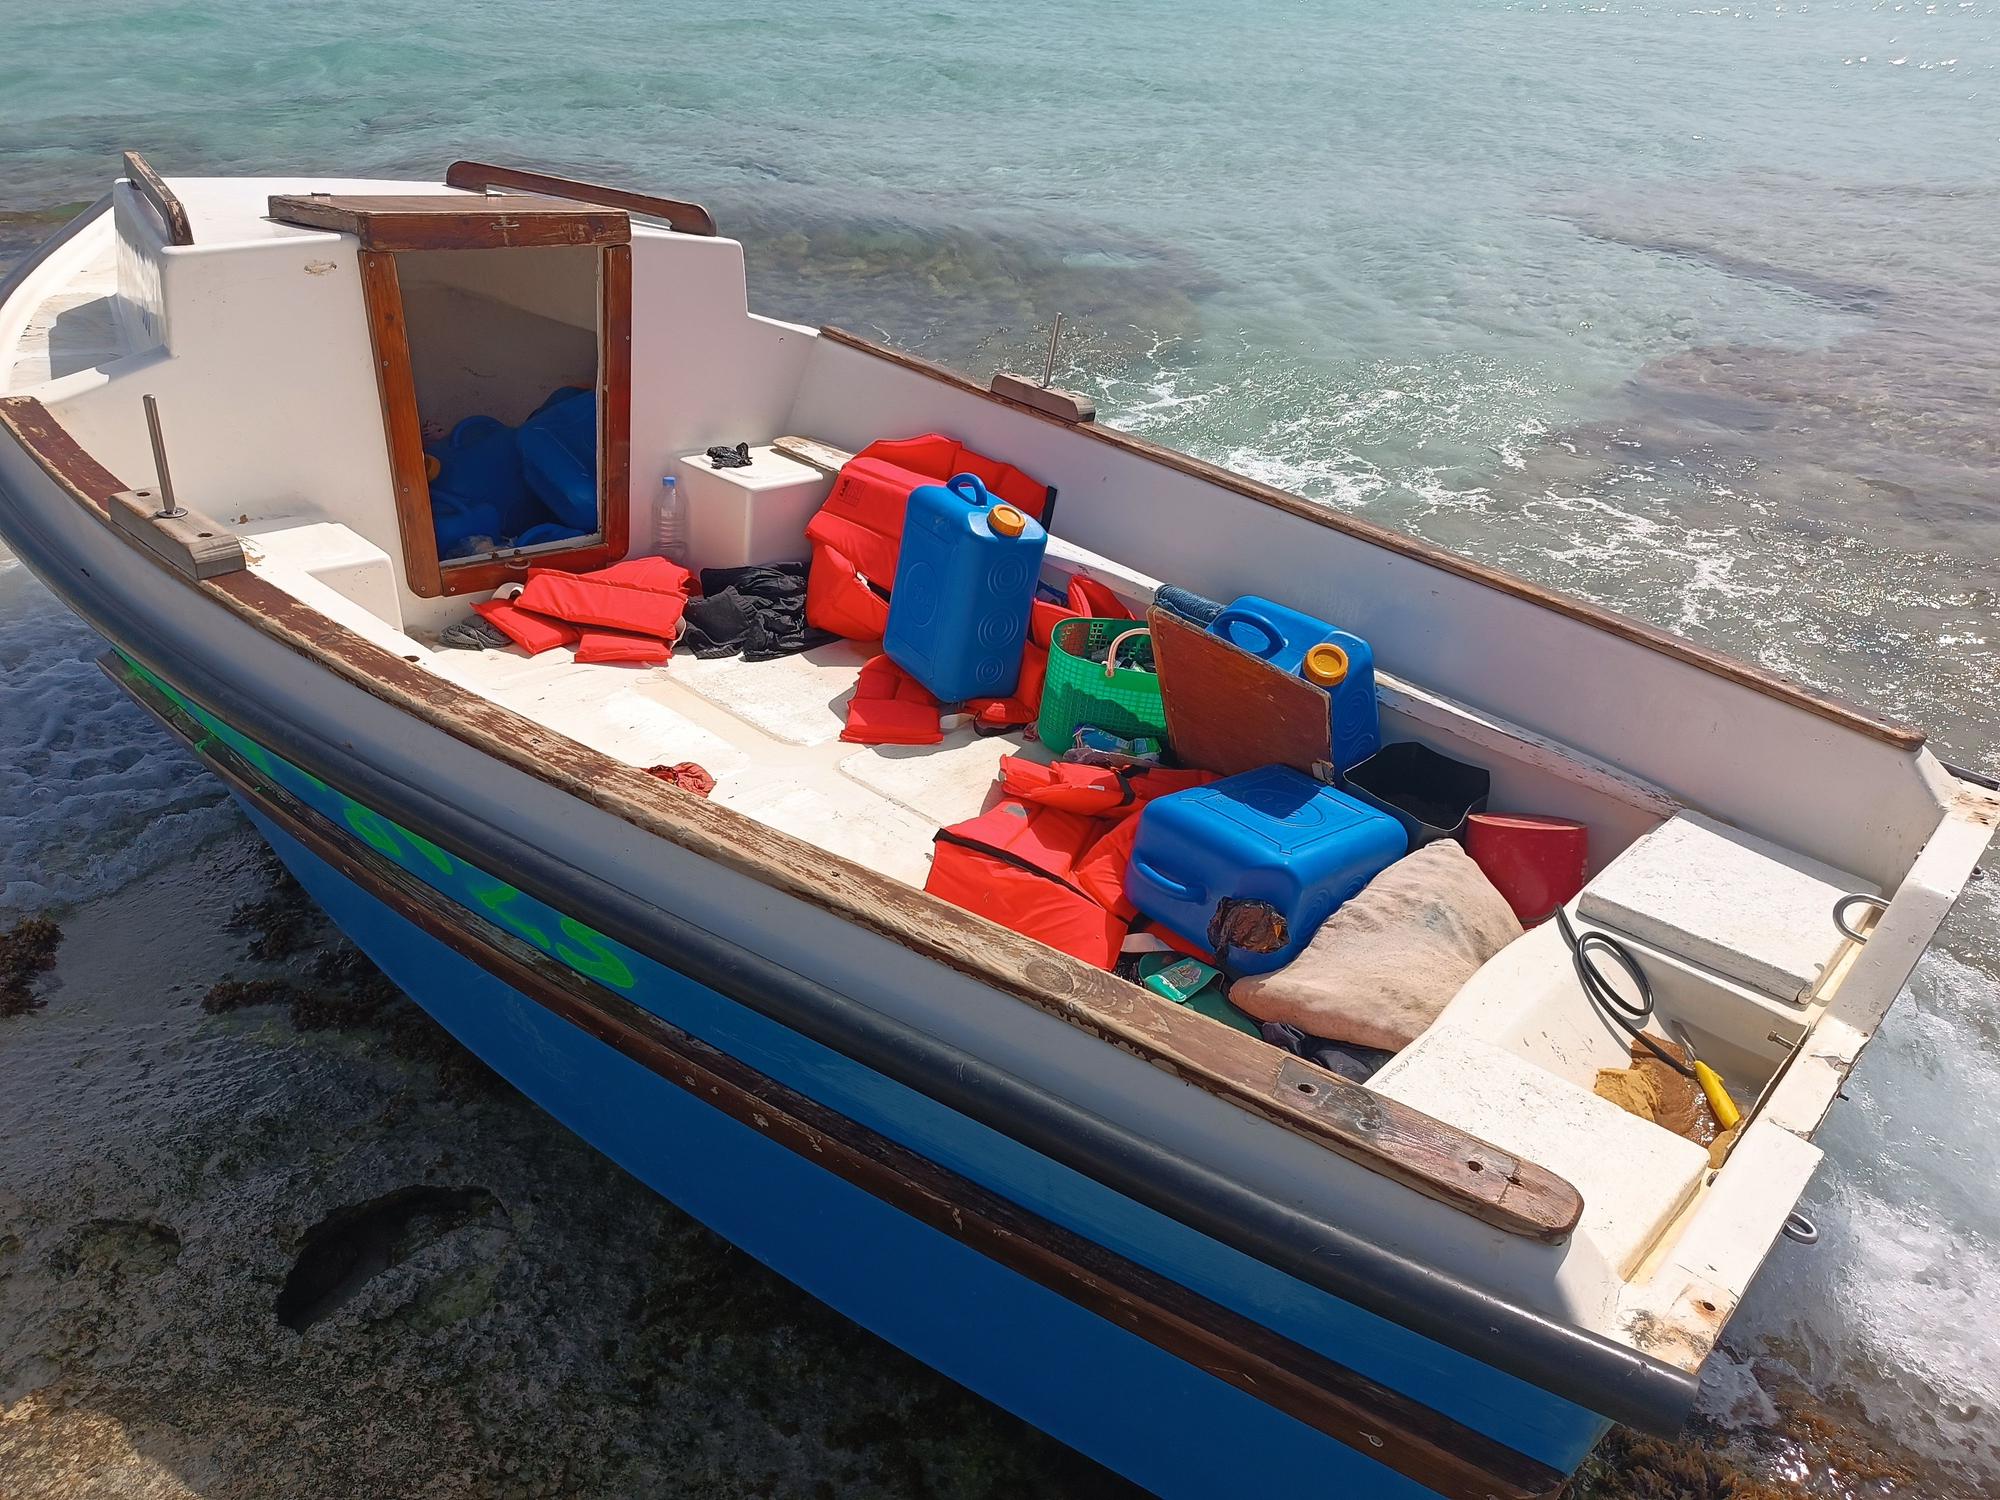 Patera llegada a Formentera con dos niñas de 4 y 5 años